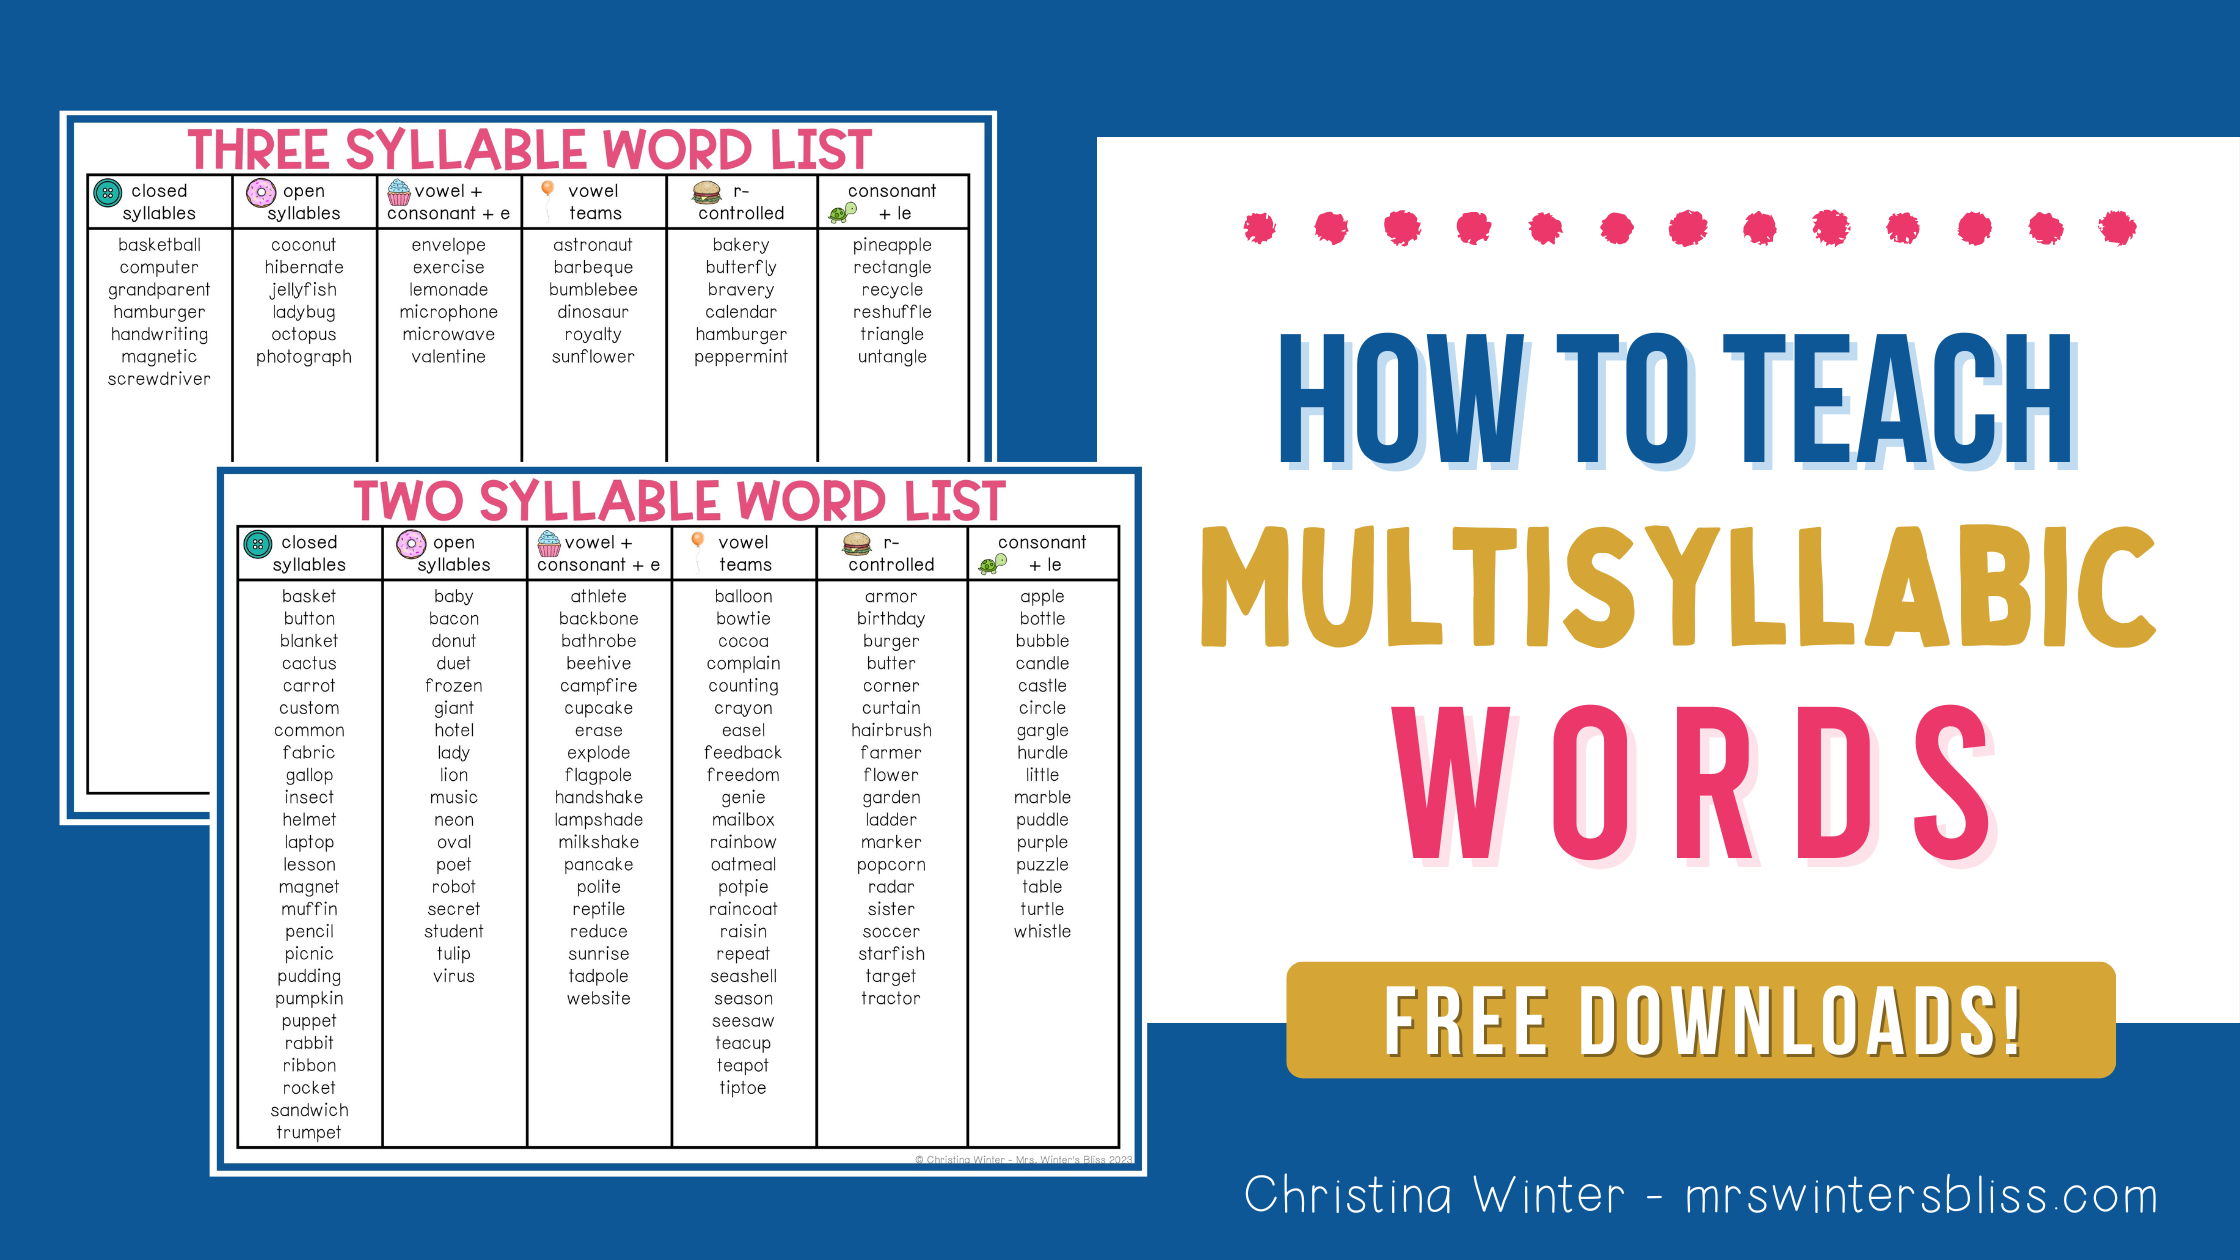 How To Teach Multisyllabic Words